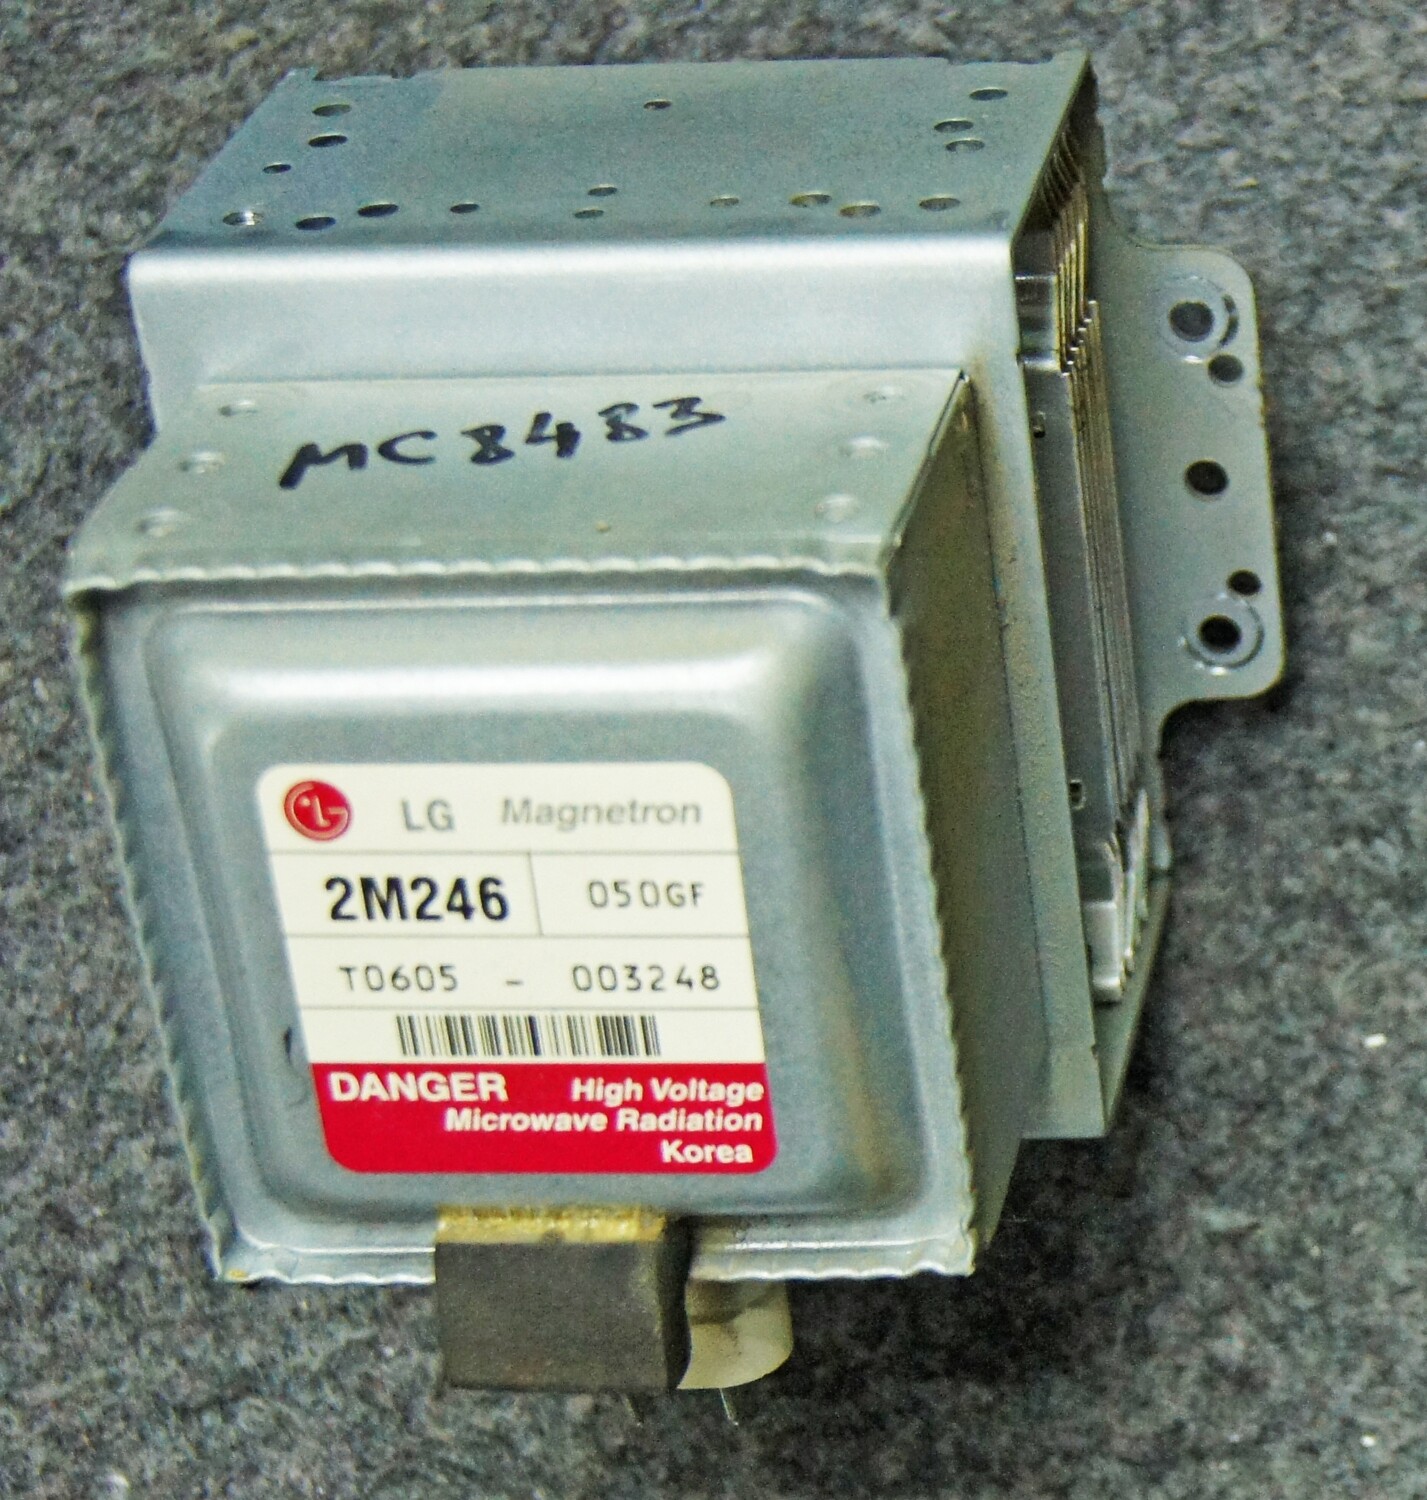 2M246 MC8483